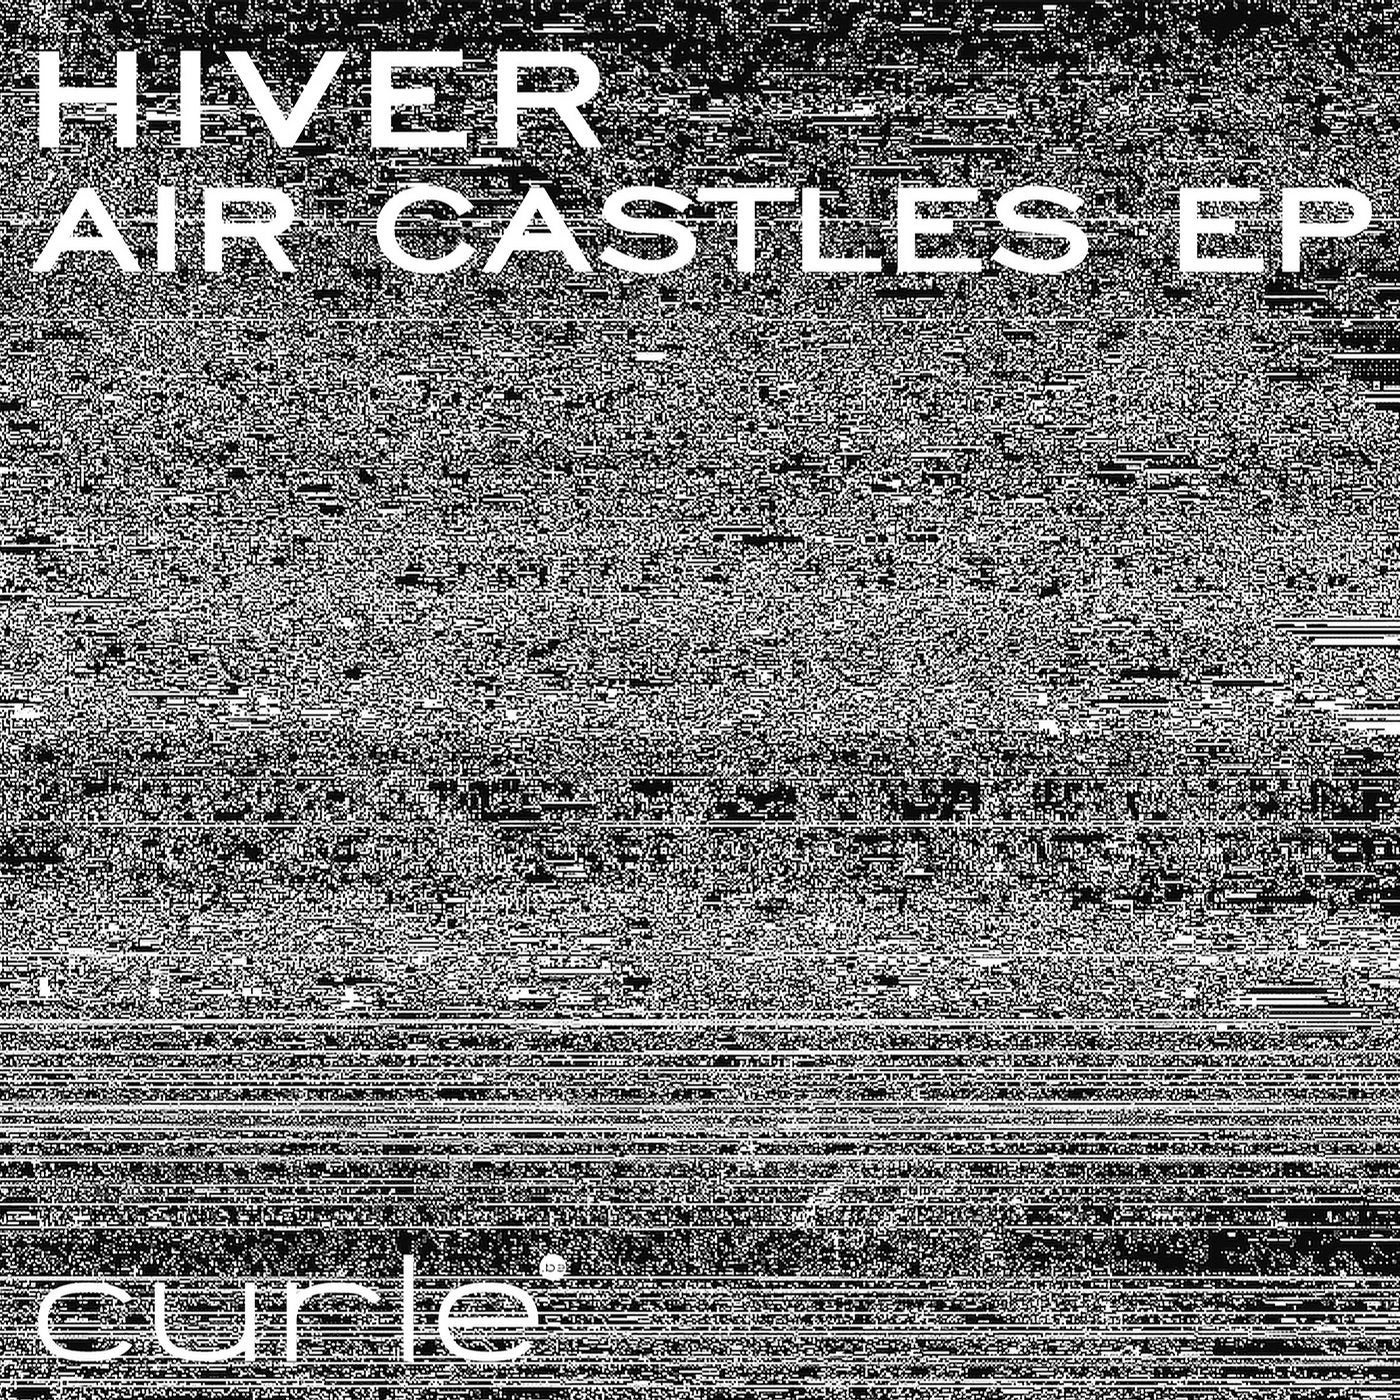 Air Castles EP